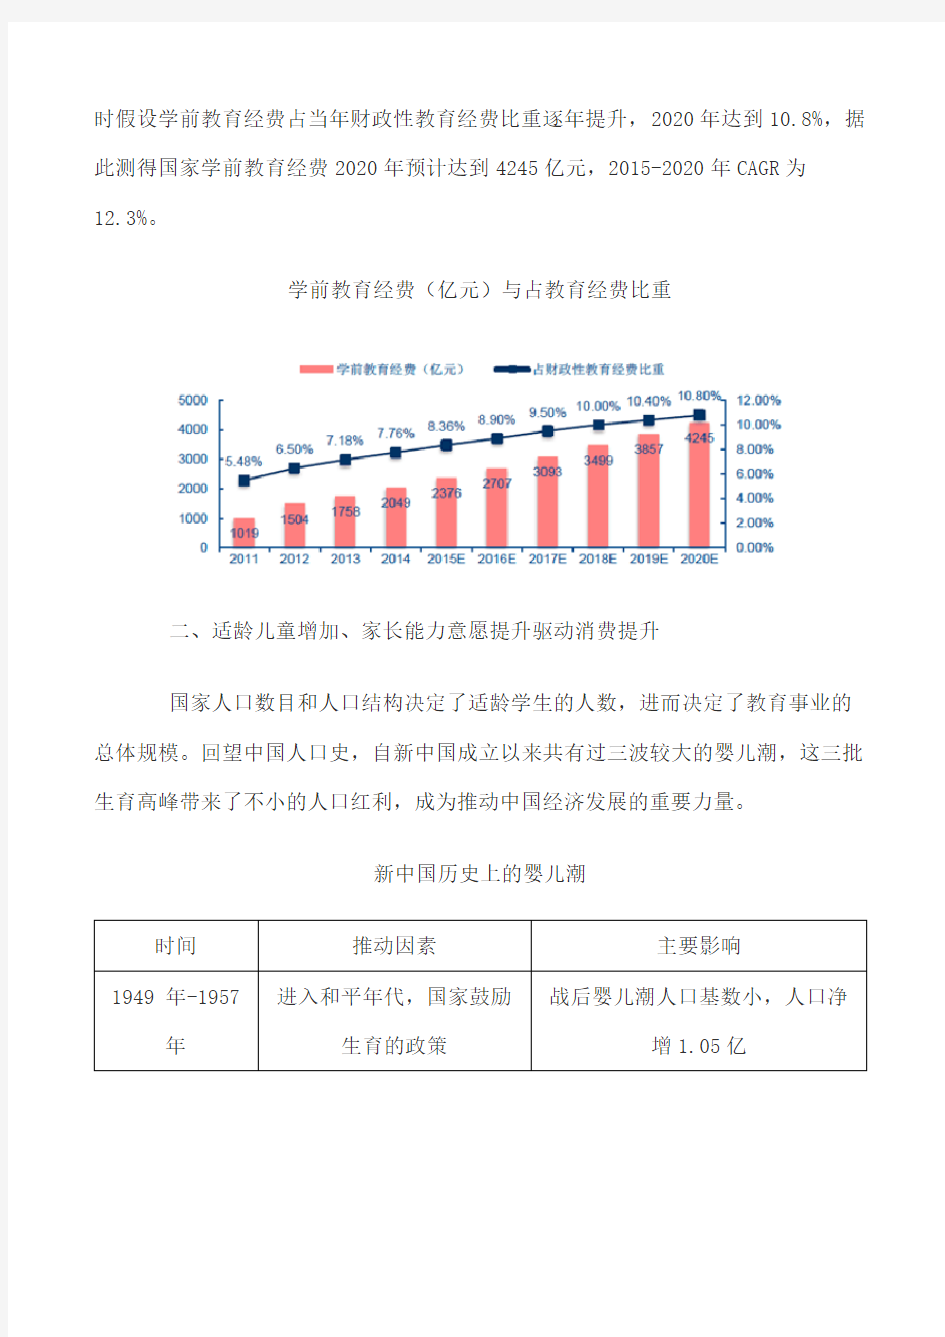 2017年中国幼教市场规模预测及行业发展趋势